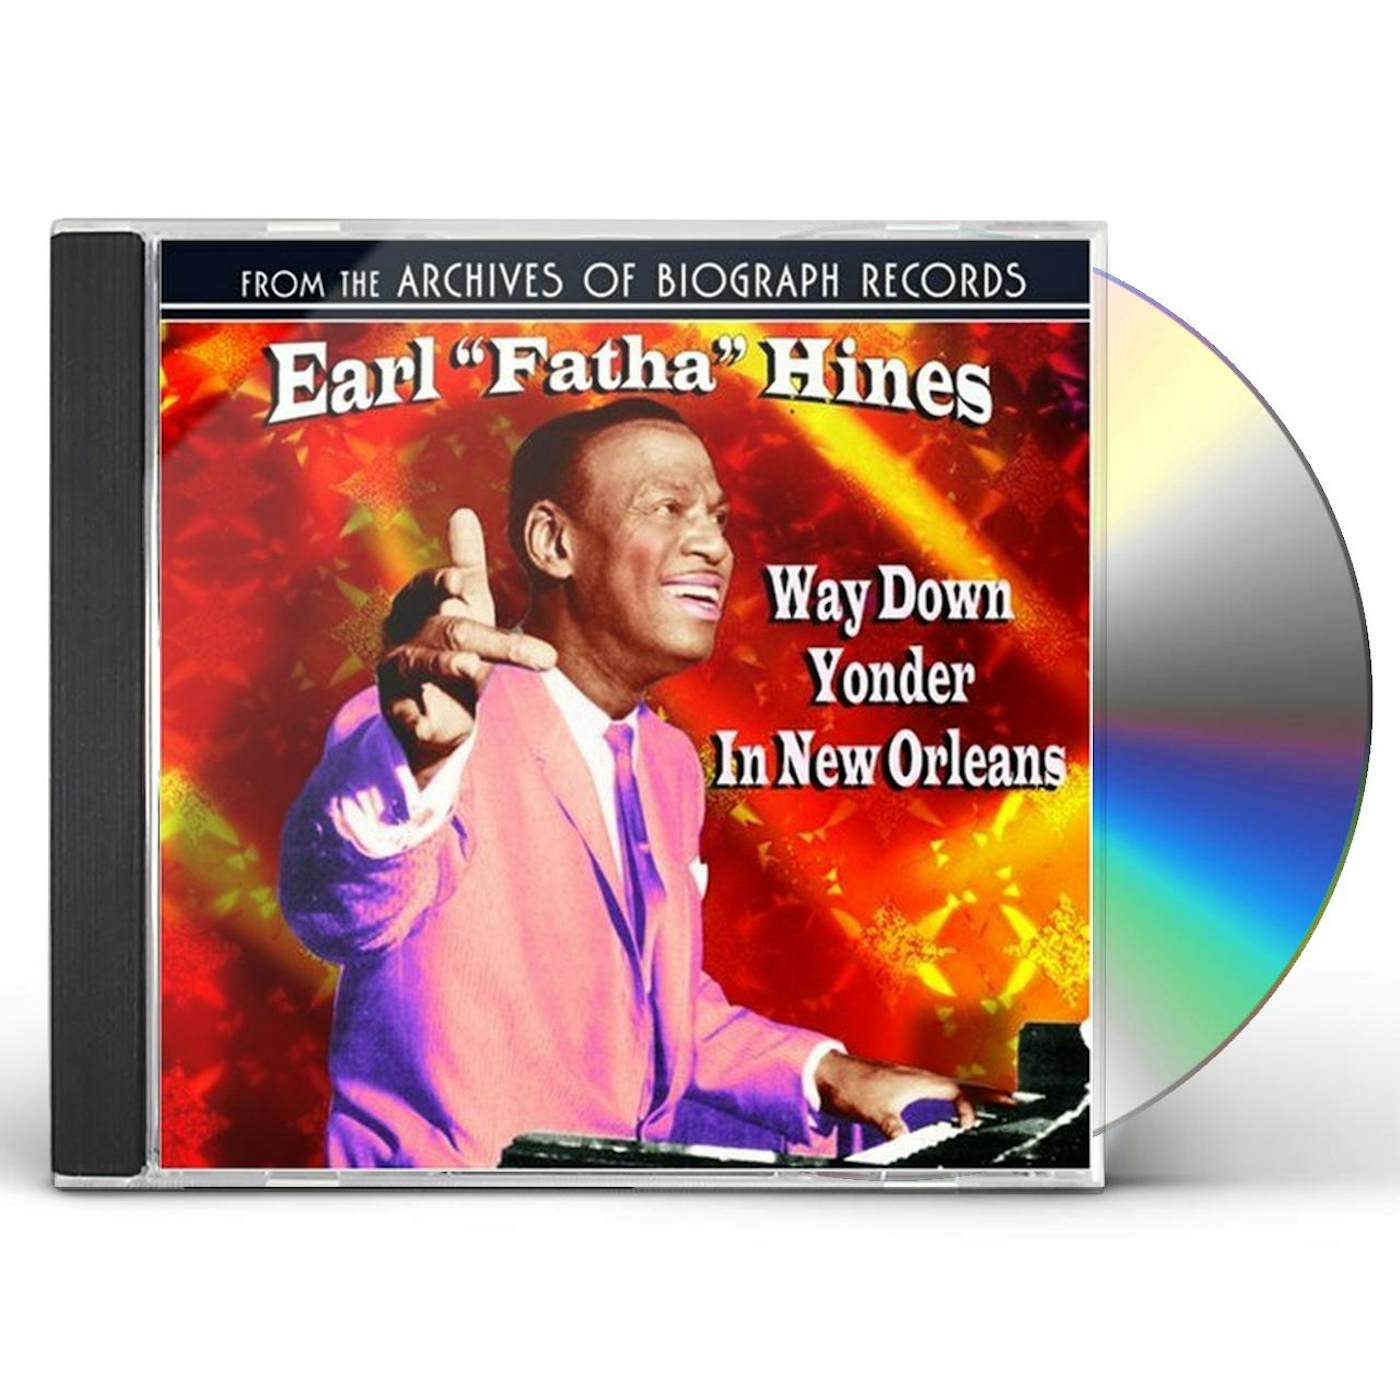 Earl Hines WAY DOWN YONDER IN NEW ORLEANS CD